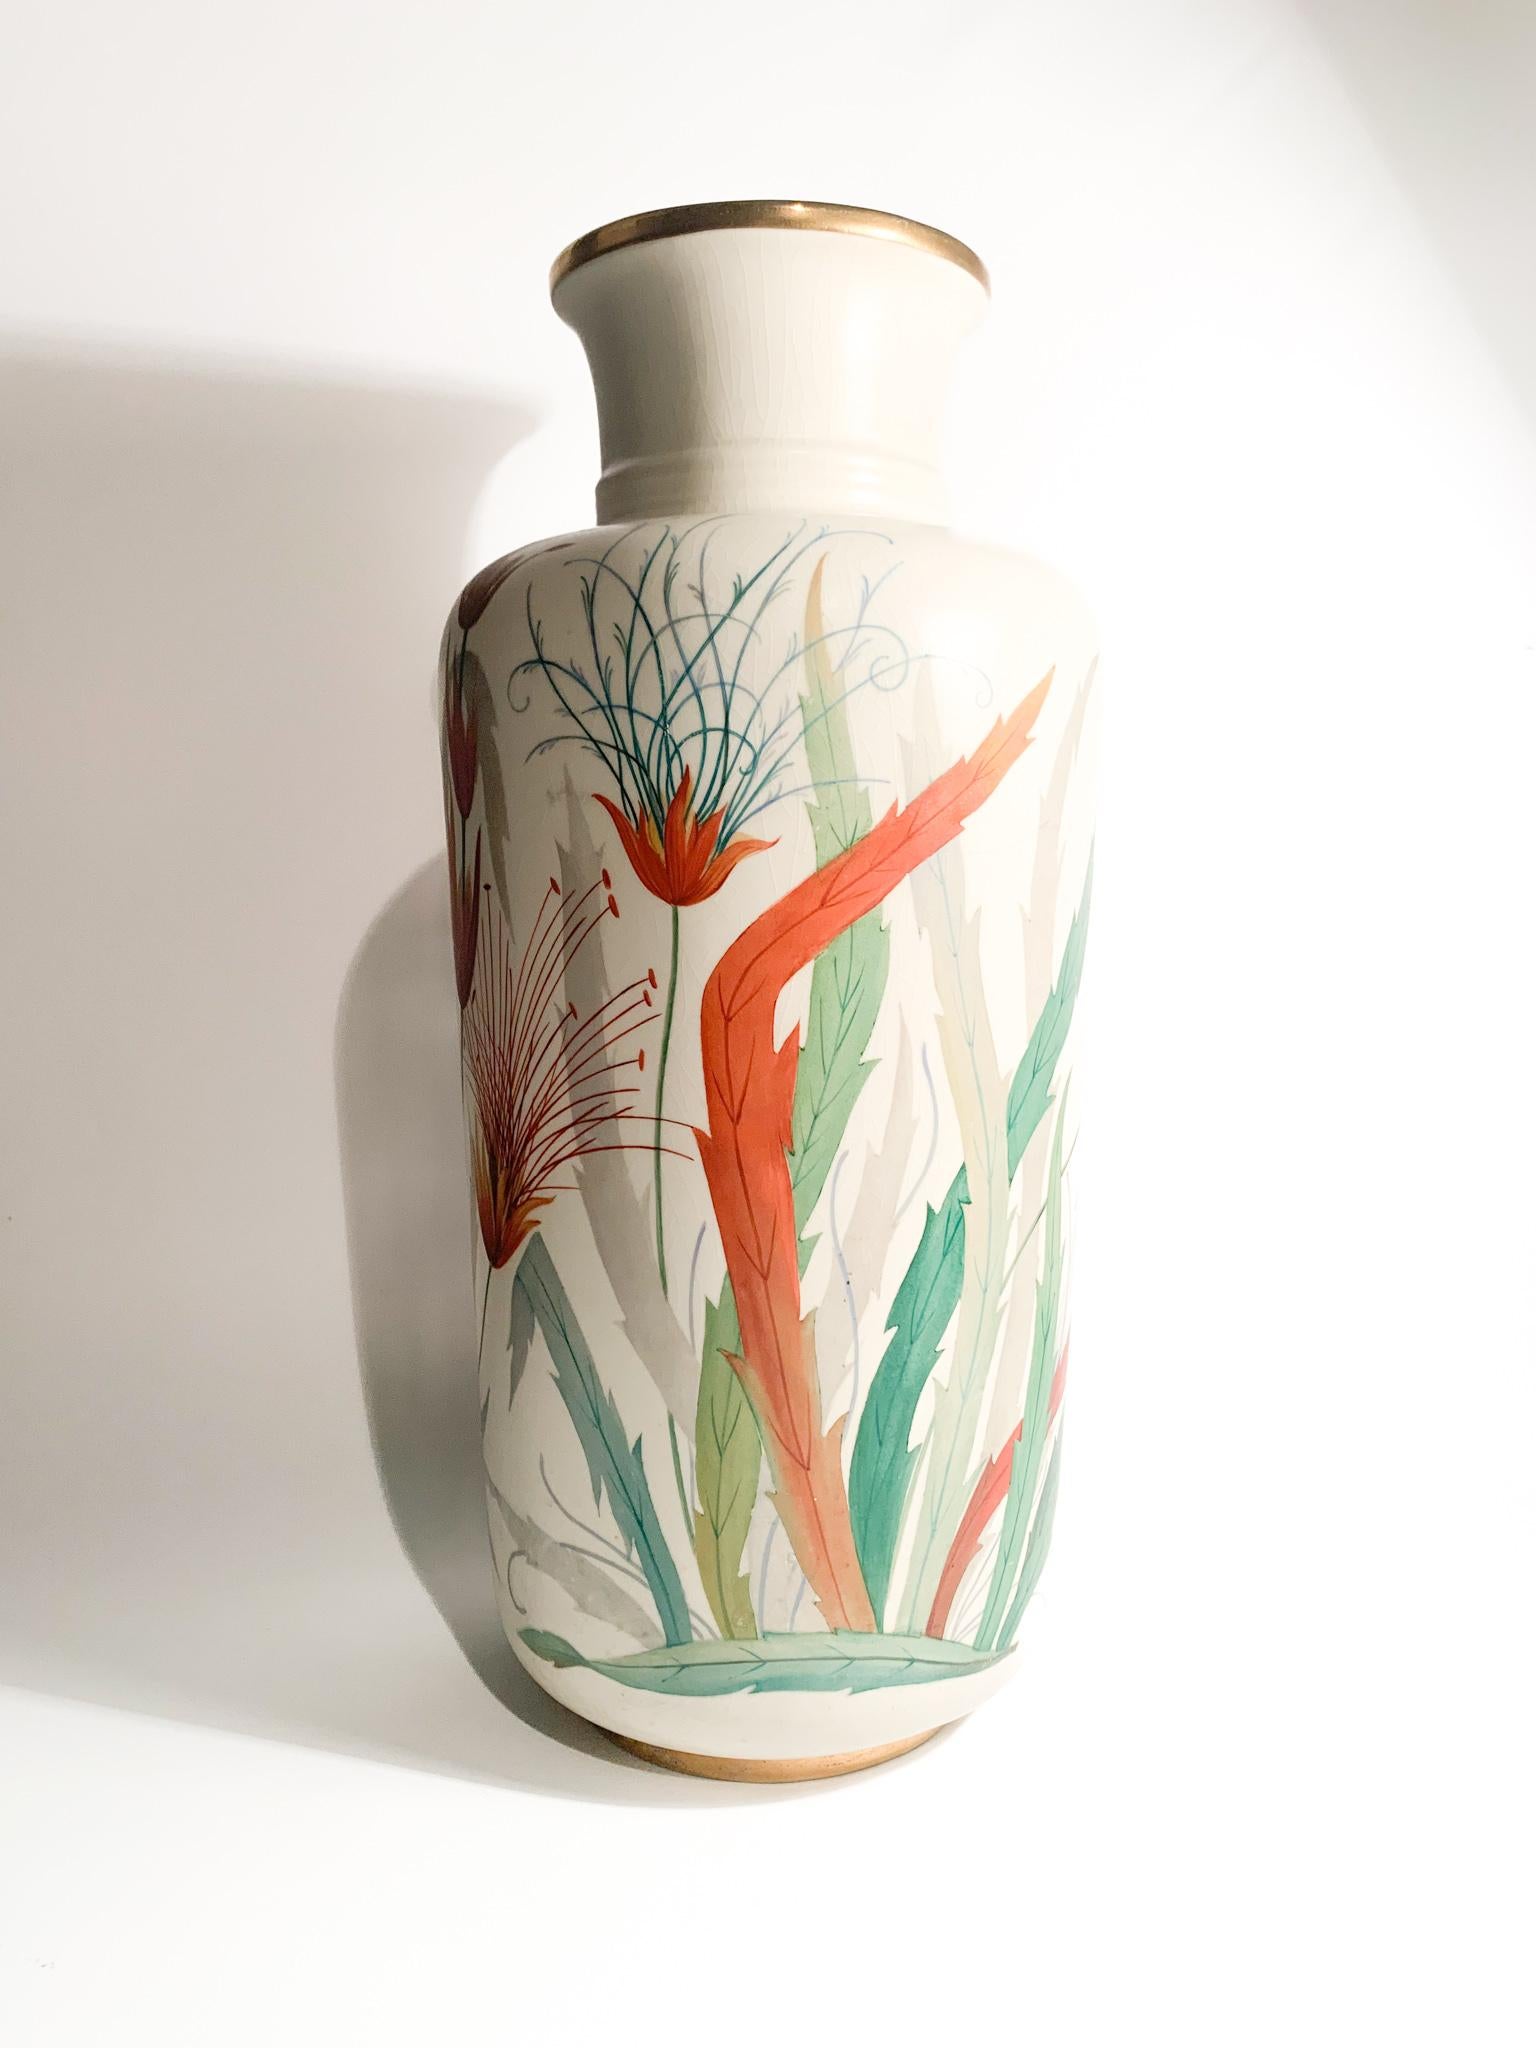 Vase en céramique de Richard Ginori peint à la main avec des motifs floraux, fabriqué dans les années 1920

Ø 20 cm h 46 cm

Entreprise d'origine lombarde fondée en 1896 lorsque le marquis Carlo Ginori, passionné d'or blanc, arrive à Doccia pour y